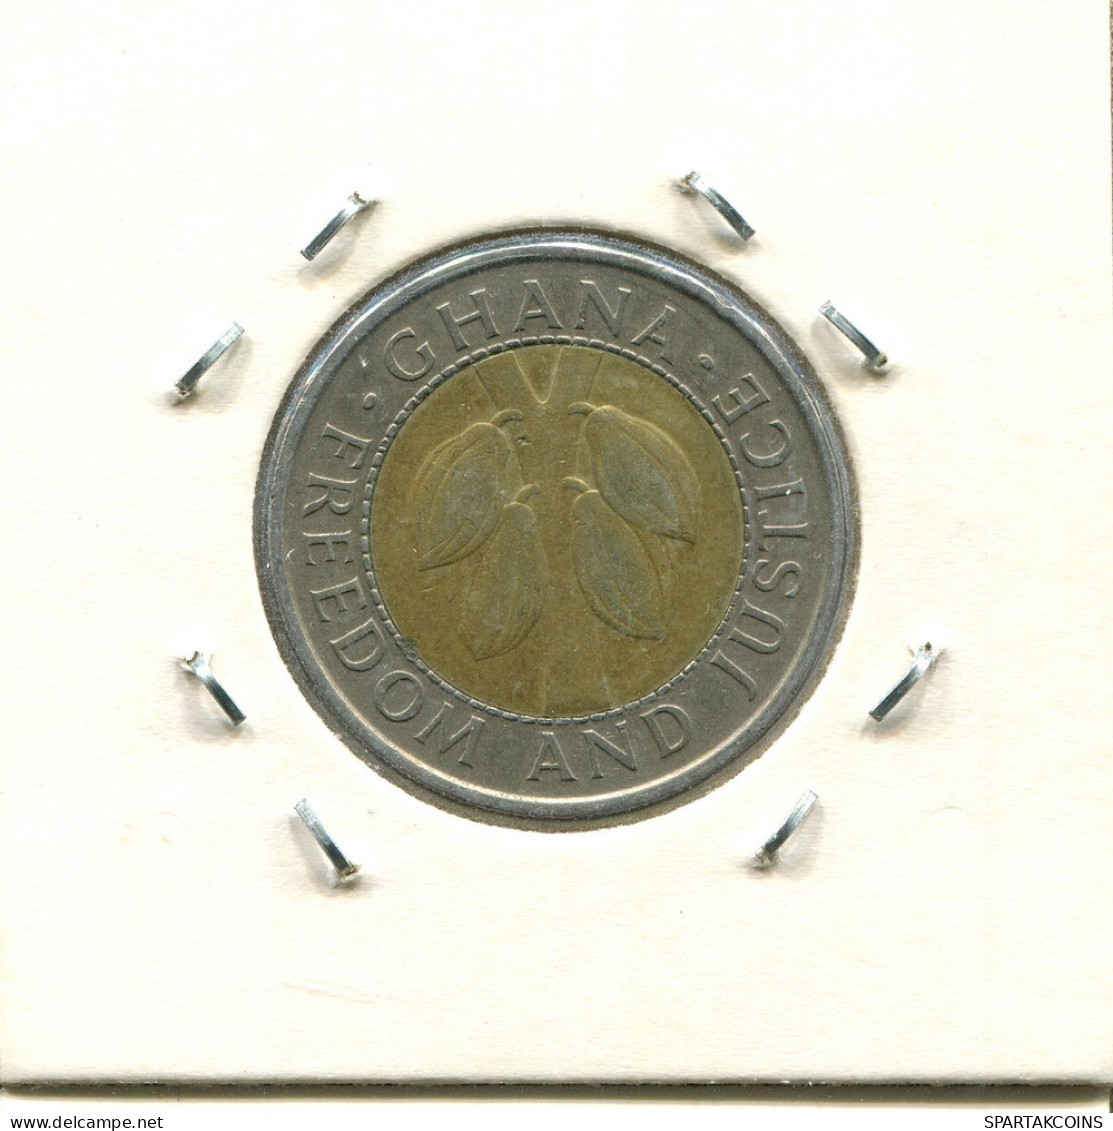 100 CEDIS 1991 GHANA BIMETALLIC Münze #AS376.D.A - Ghana